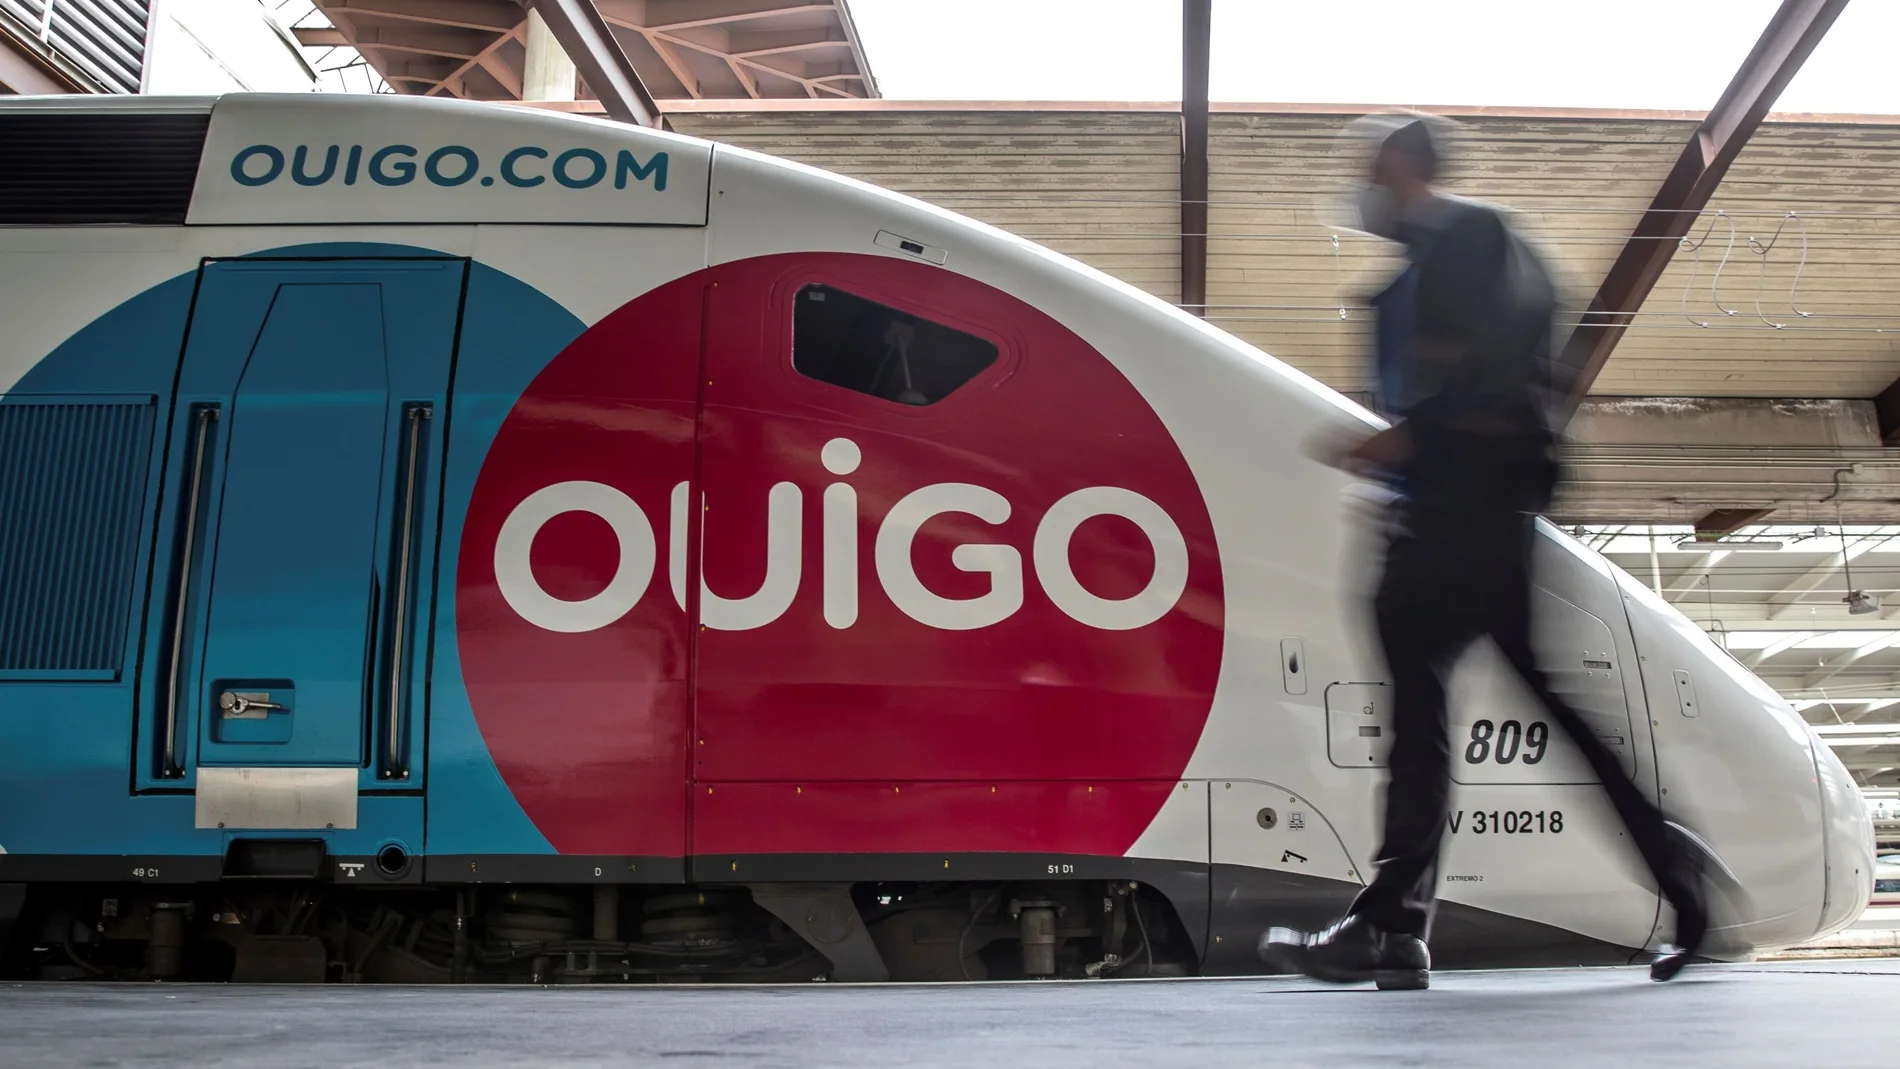 Vista exterior de uno de los trenes de alta velocidad de la empresa Ouigo